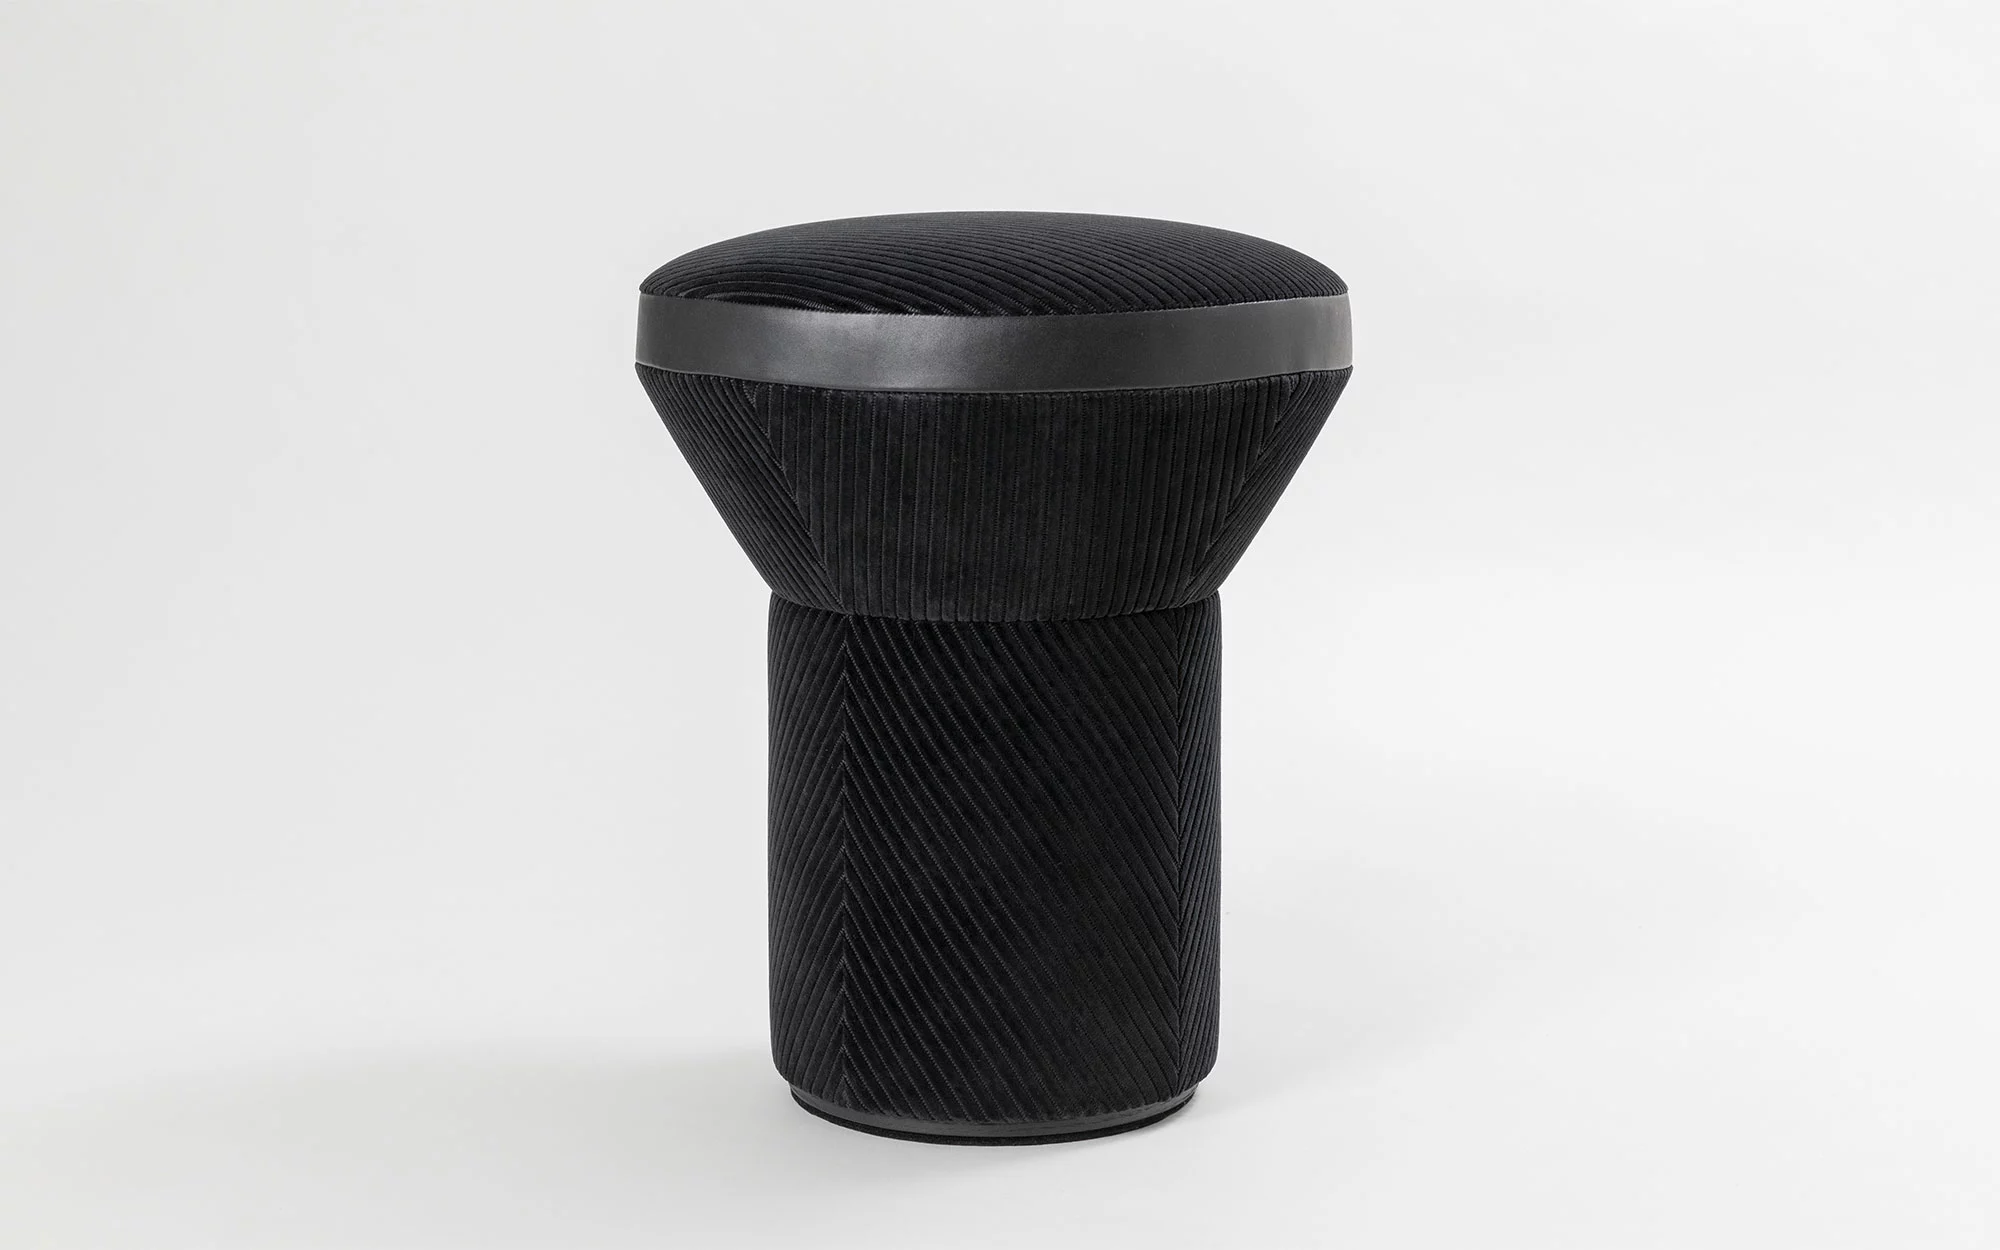 Gemini stool - Jean-Baptiste Fastrez - Pendant light - Galerie kreo